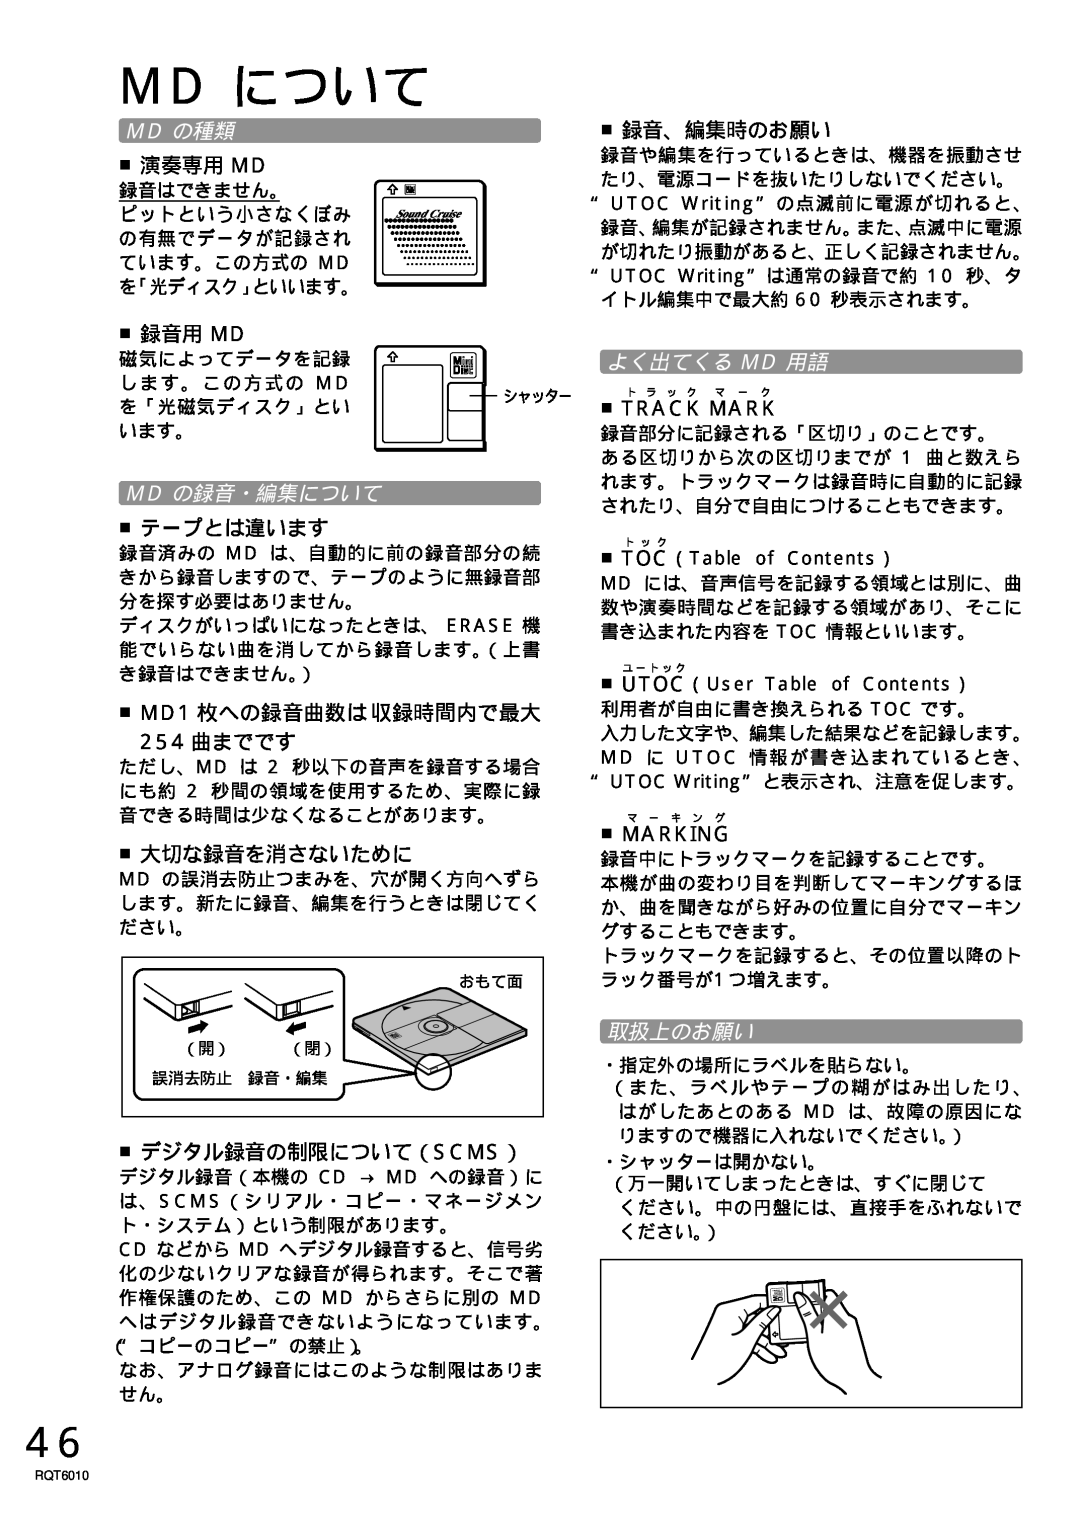 Panasonic RX-MDX55 manual Md について, Md の種類, よく出てくる Md 用語, Track Mark, Md の録音・編集について, Marking, 取扱上のお願い 